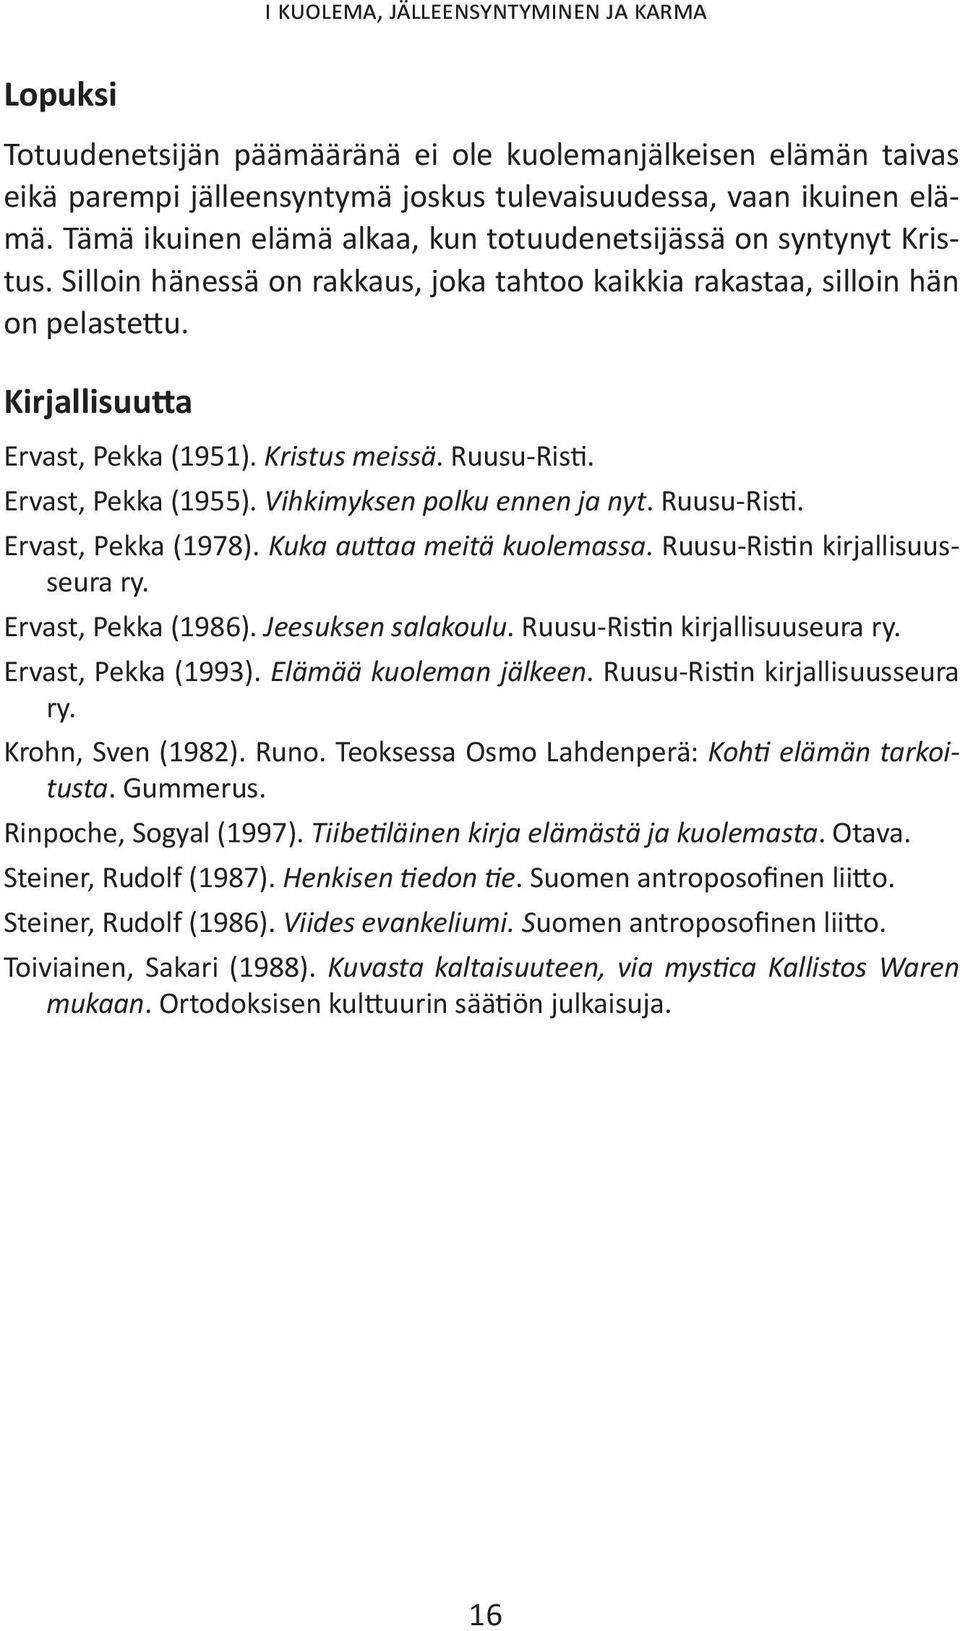 Kristus meissä. Ruusu-Risti. Ervast, Pekka (1955). Vihkimyksen polku ennen ja nyt. Ruusu-Risti. Ervast, Pekka (1978). Kuka auttaa meitä kuolemassa. Ruusu-Ristin kirjallisuusseura ry.